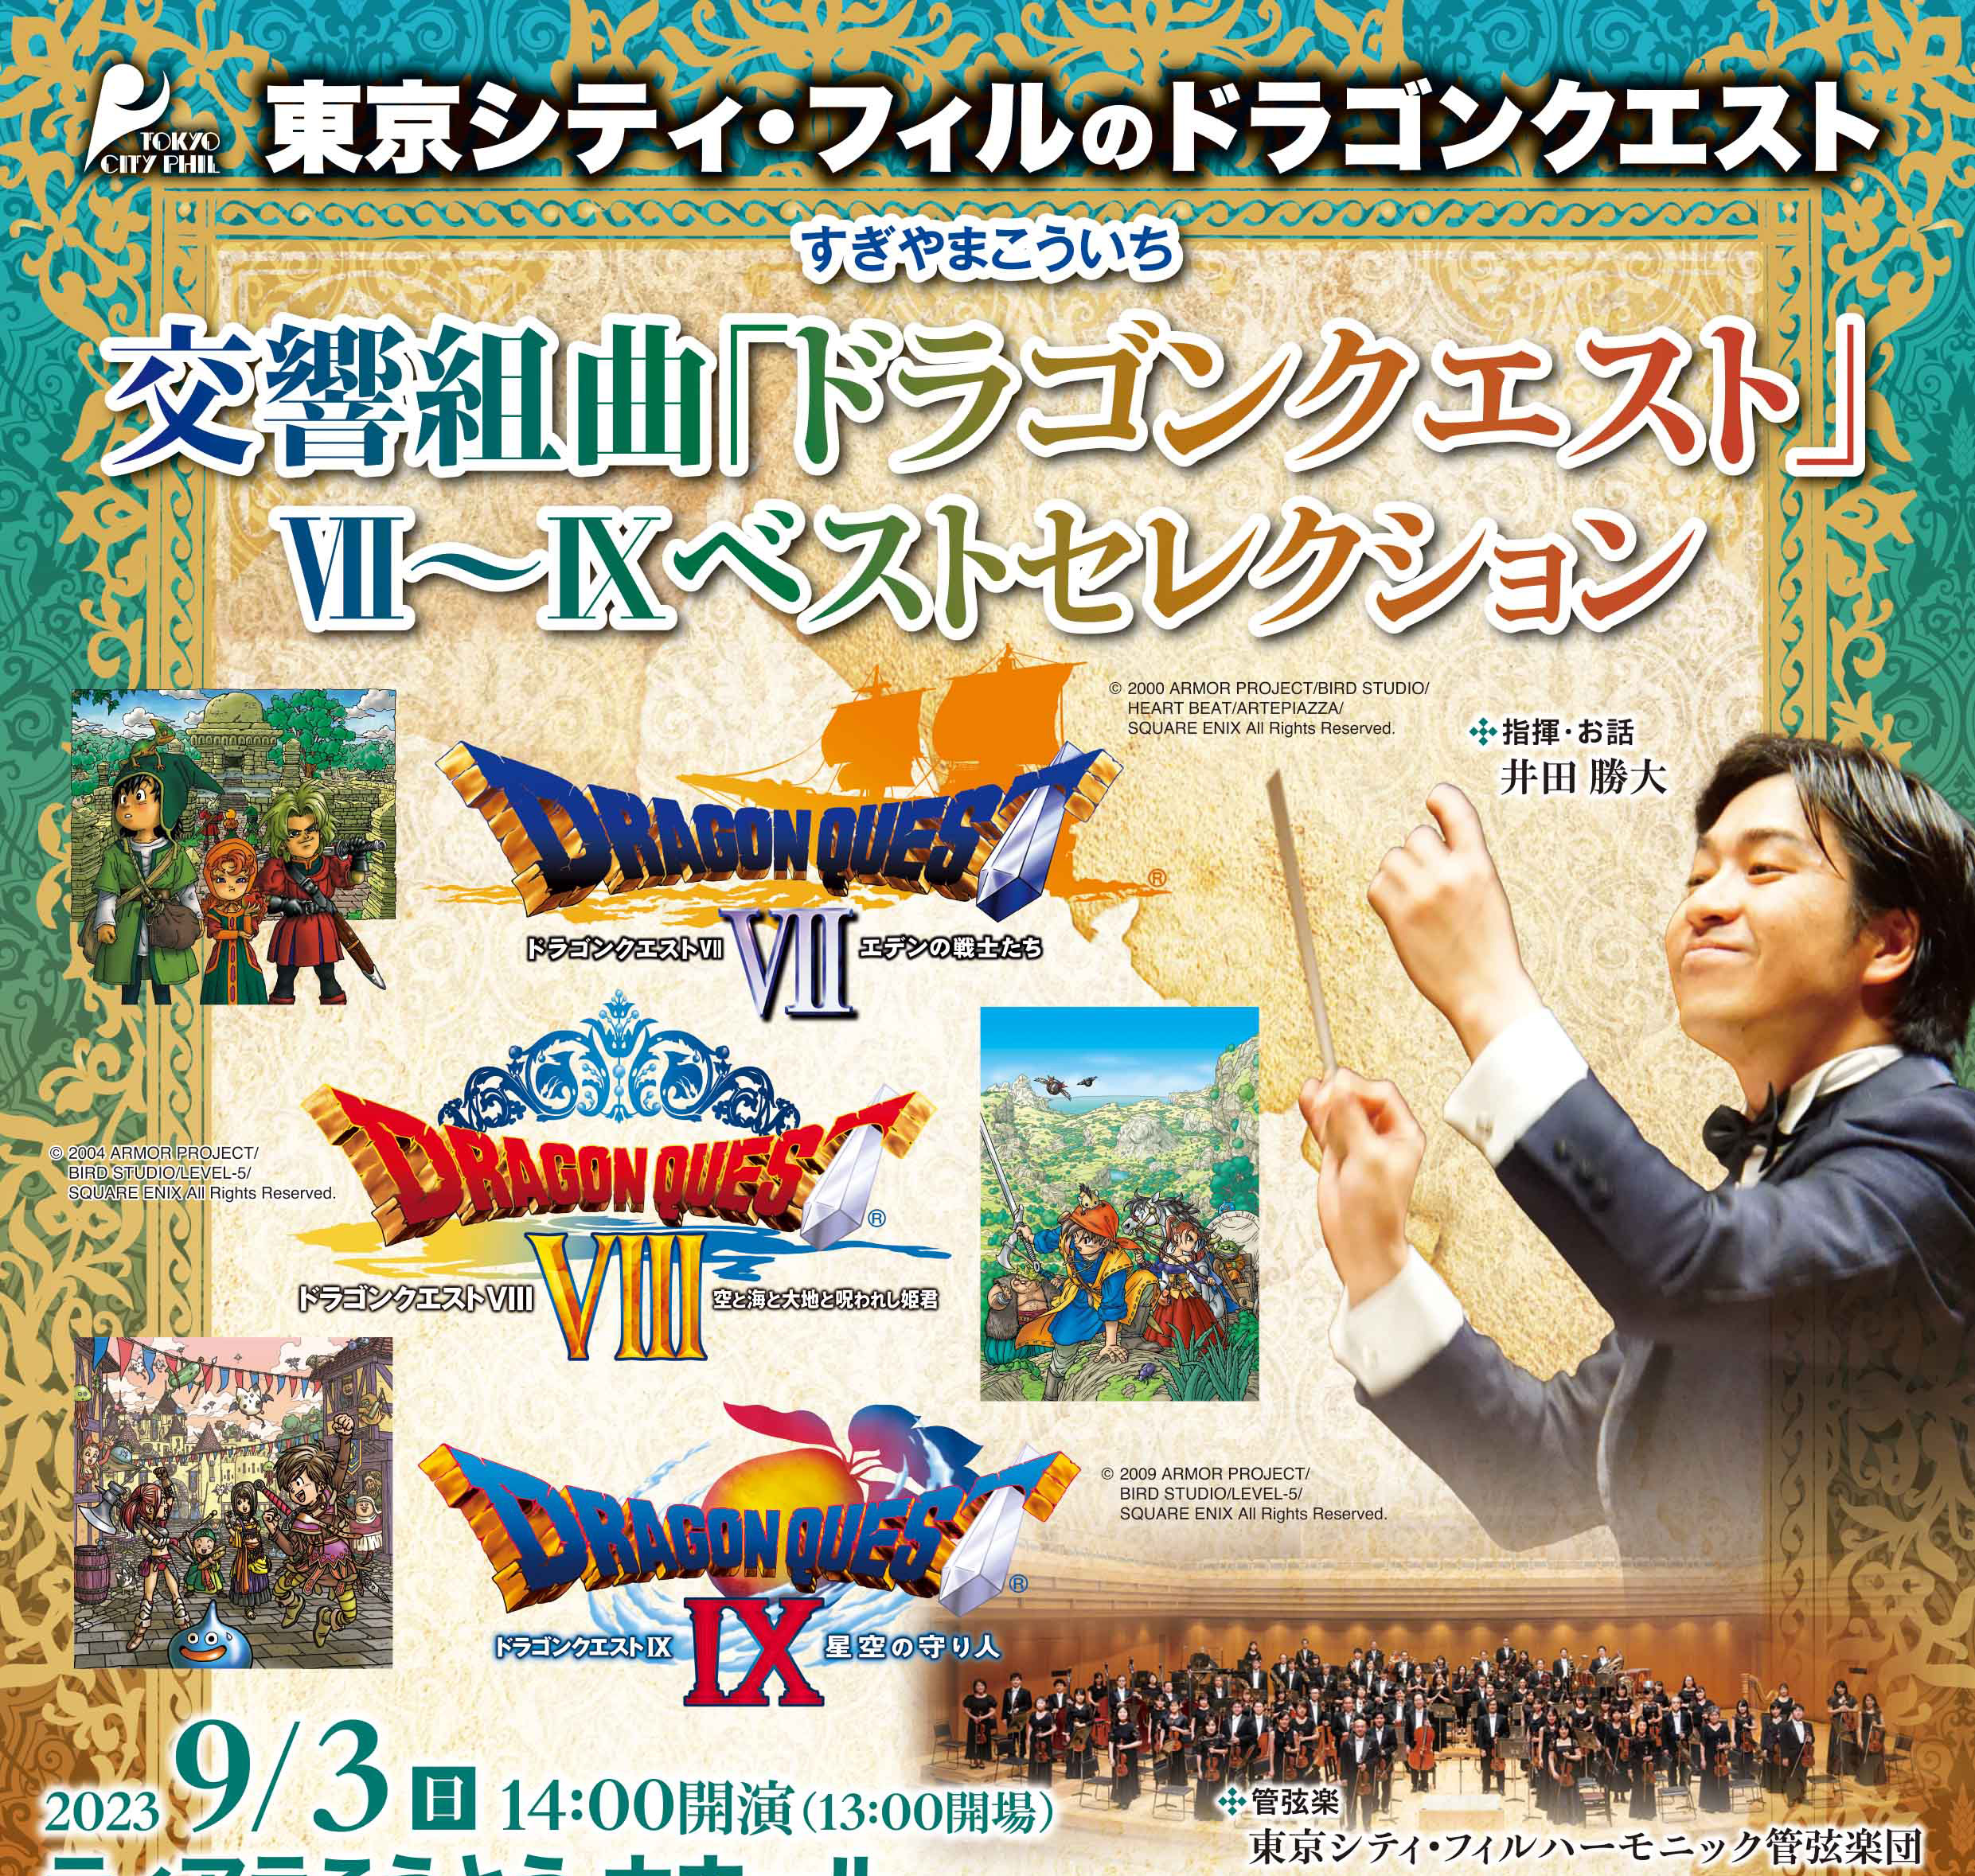 東京シティ・フィルハーモニック管弦楽団による「ドラゴンクエストVII